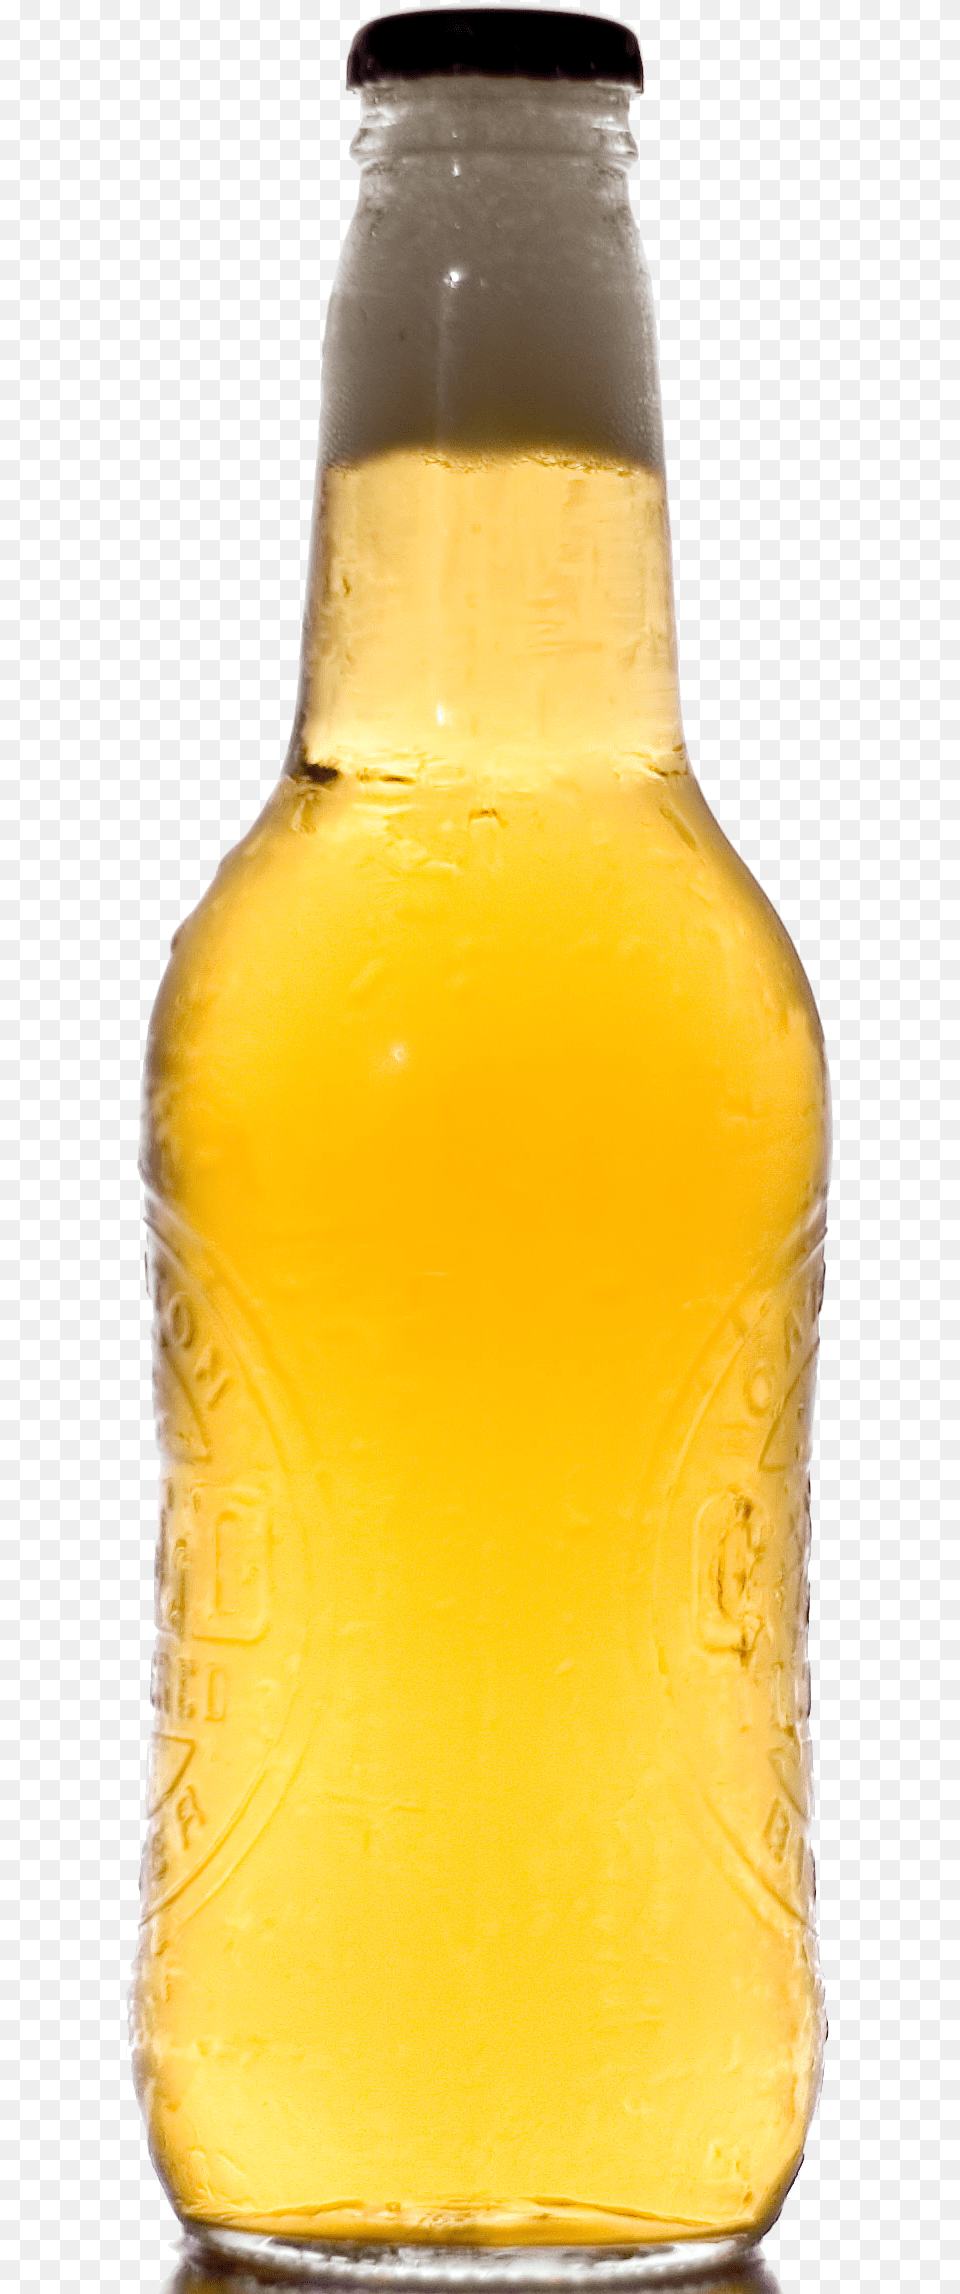 Bottle, Alcohol, Beer, Beer Bottle, Beverage Free Transparent Png